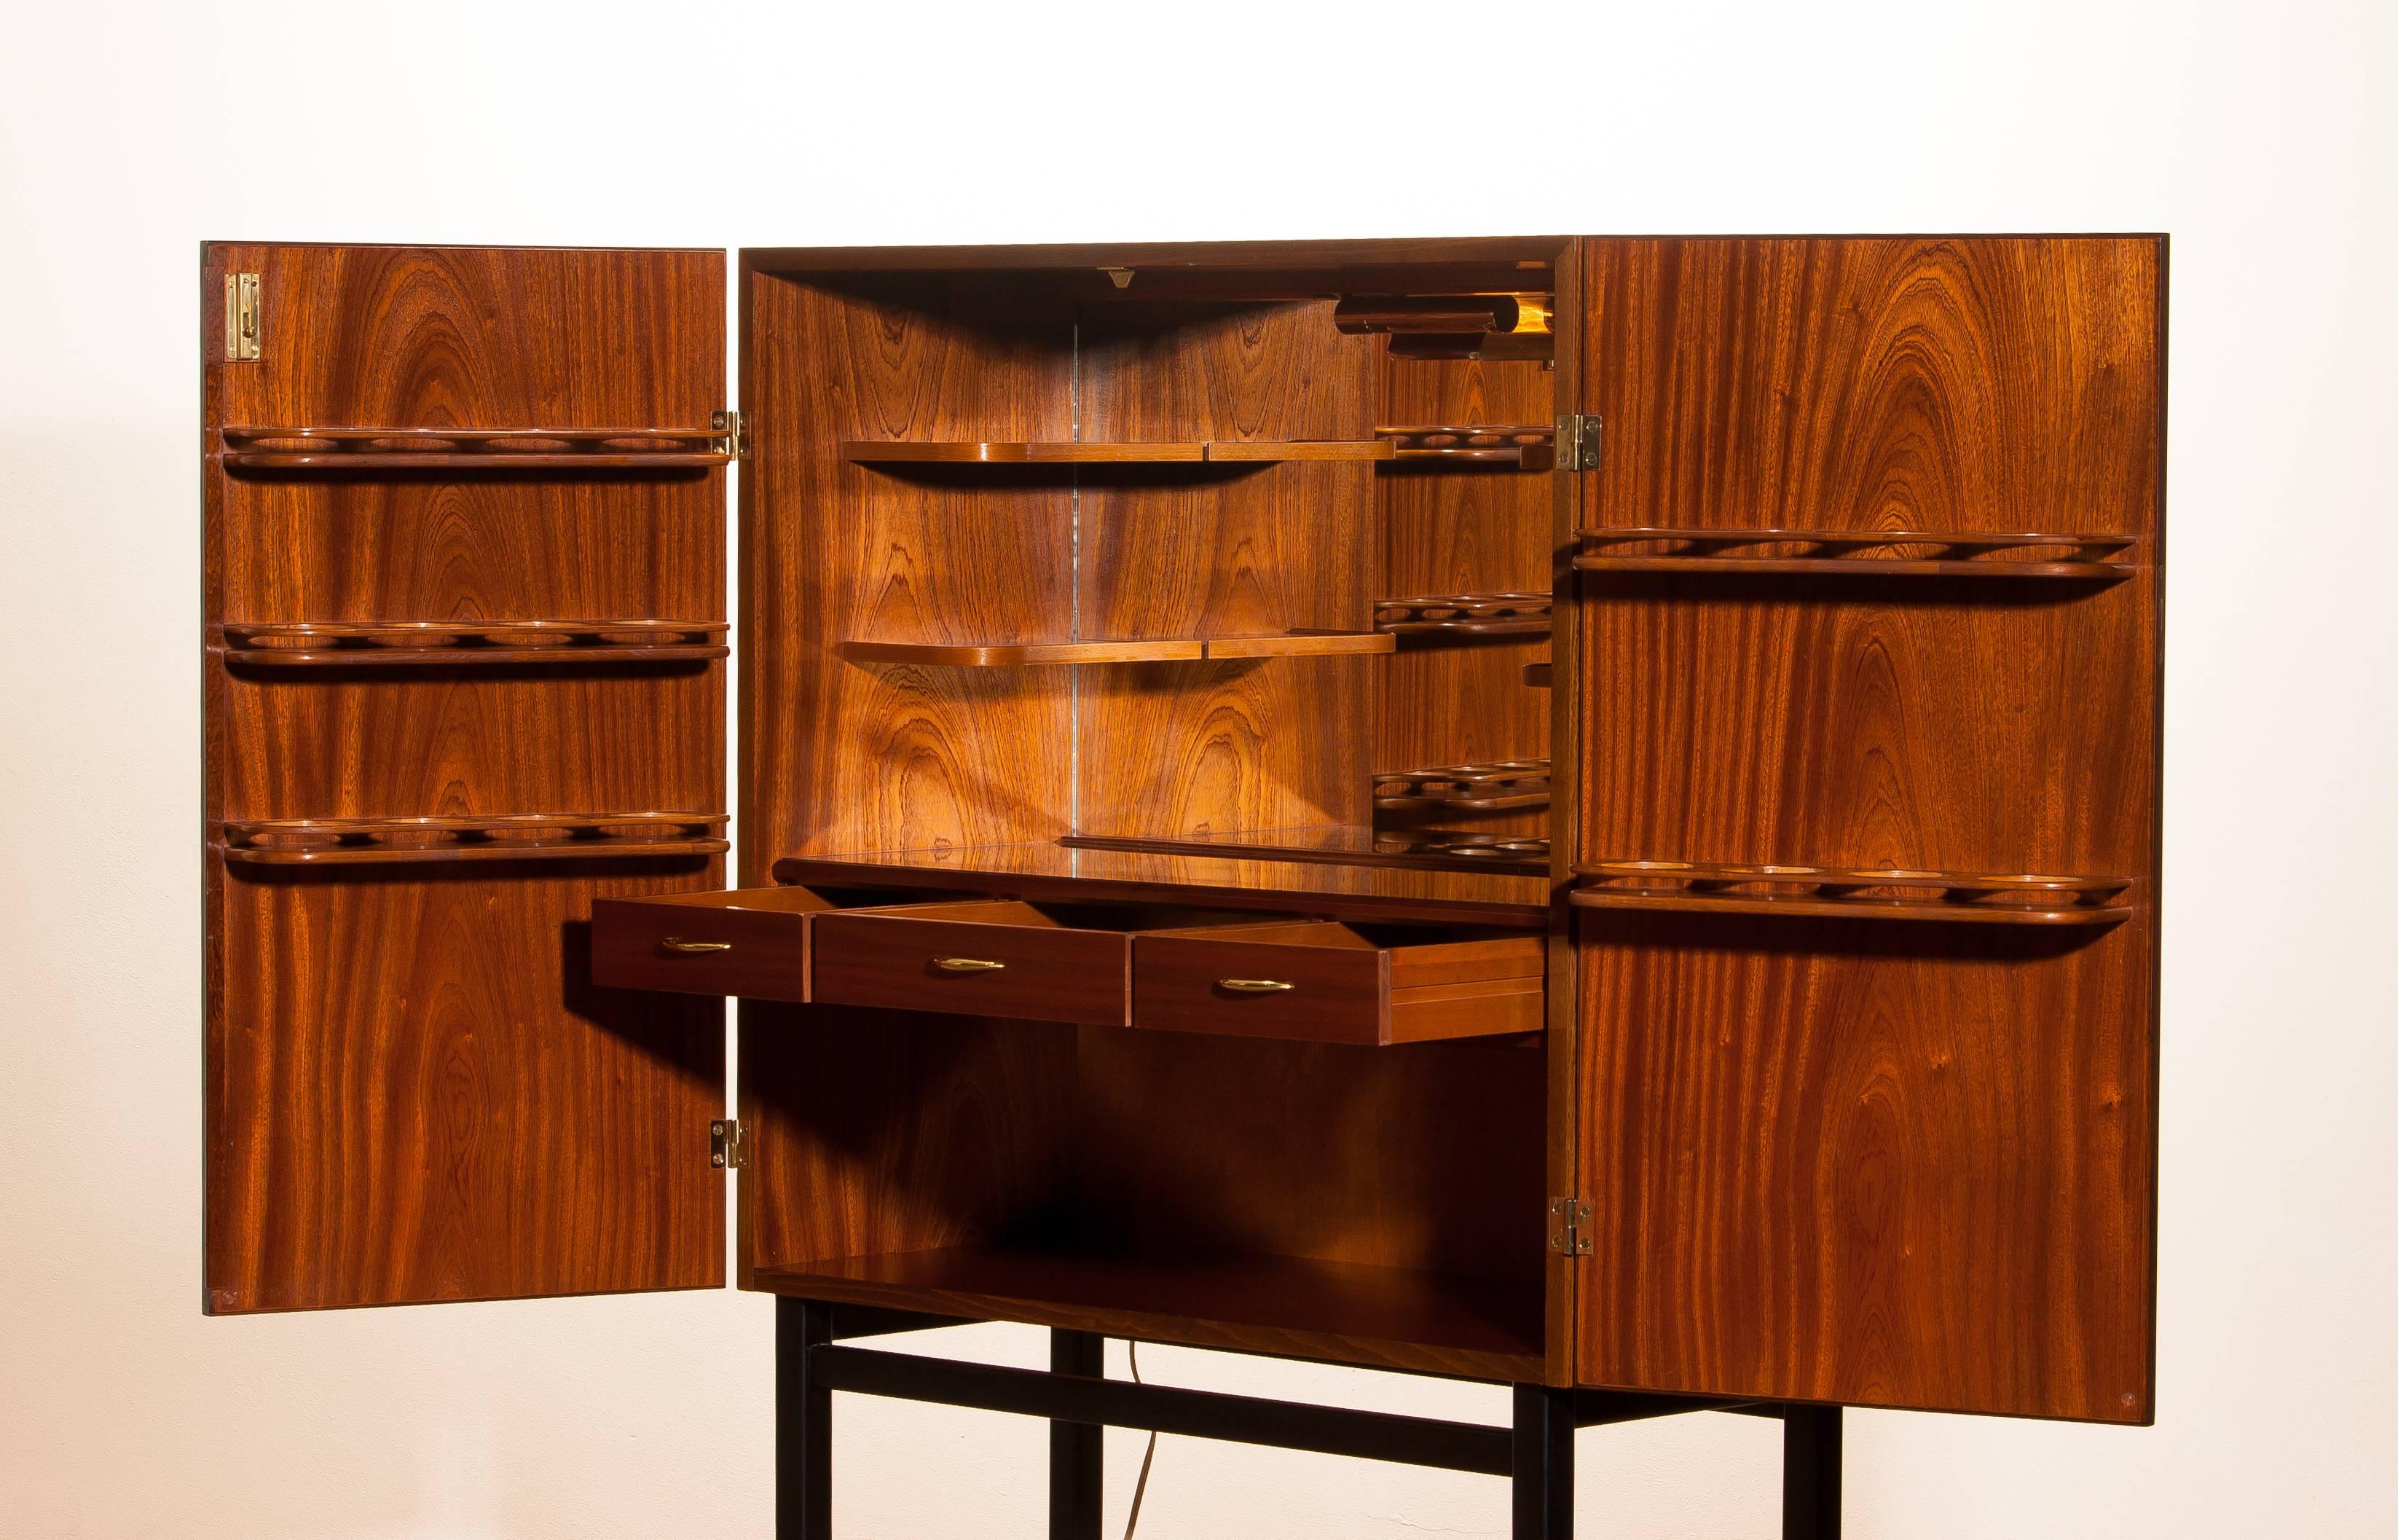 Mahogany Dry Bar Cabinet, Brass Details, High Black Skinny Legs Made by Förenade 5